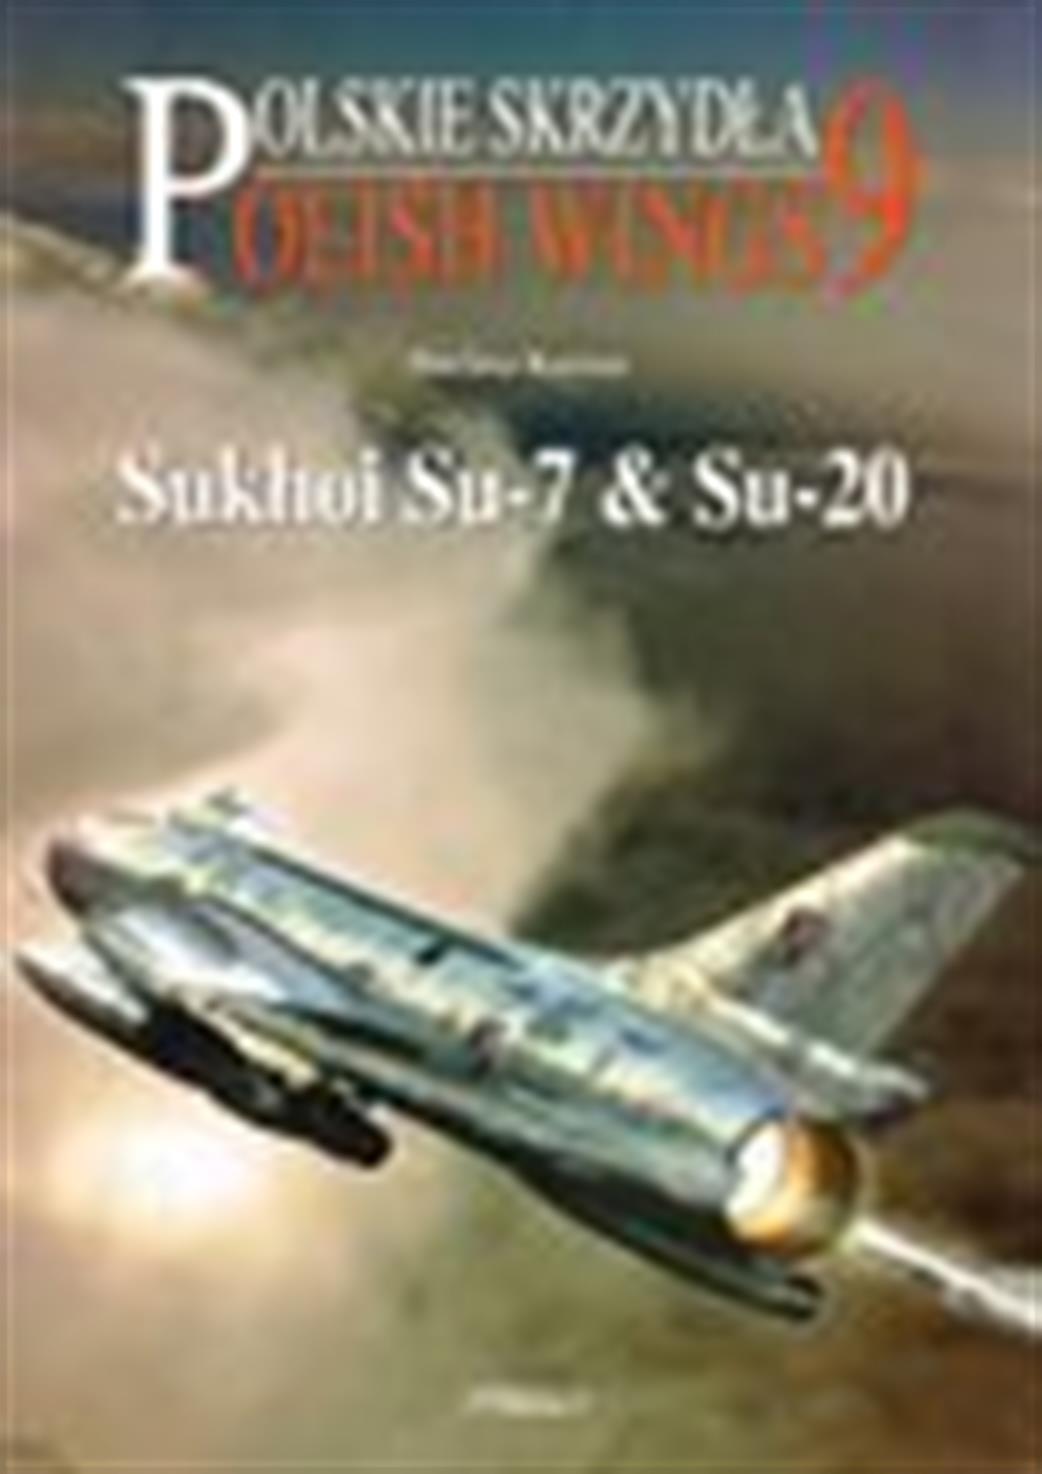 9788389450968 Sukhoi SU-7 &SU20 - Polish Wings 9